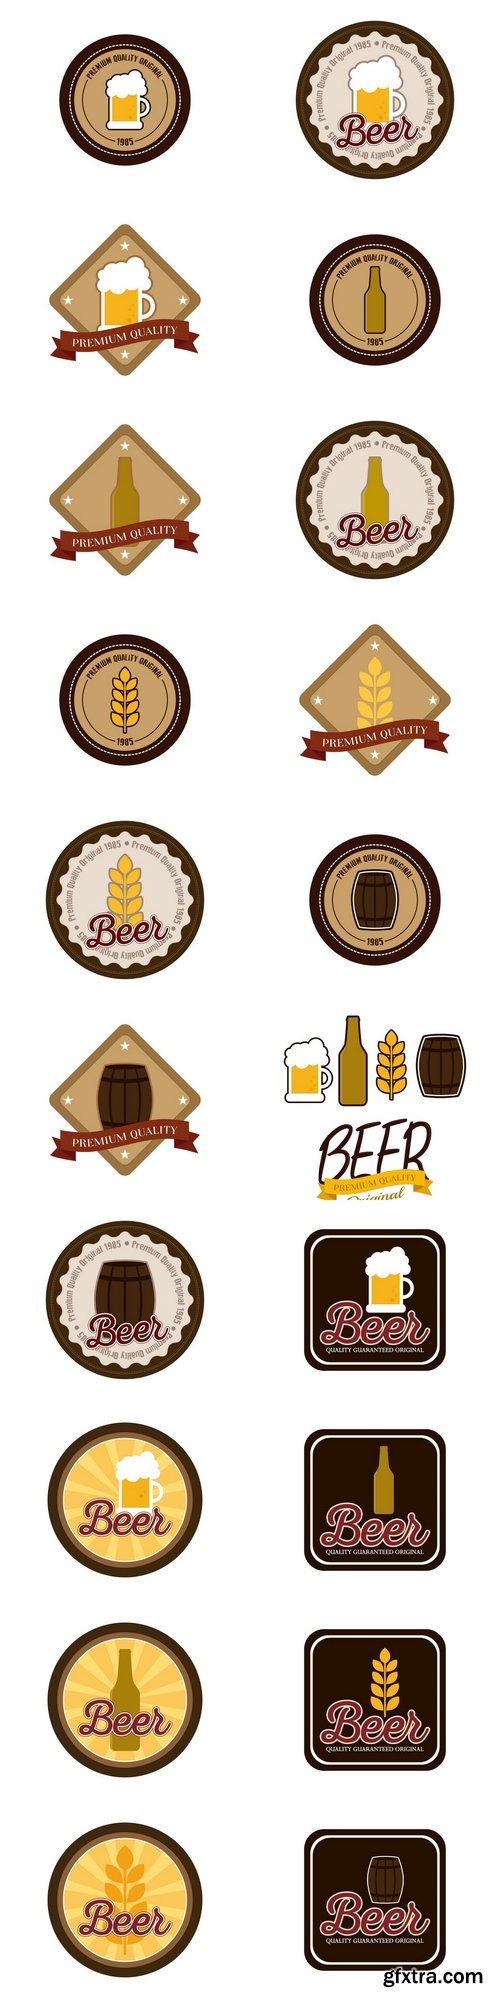 Beer labels 4